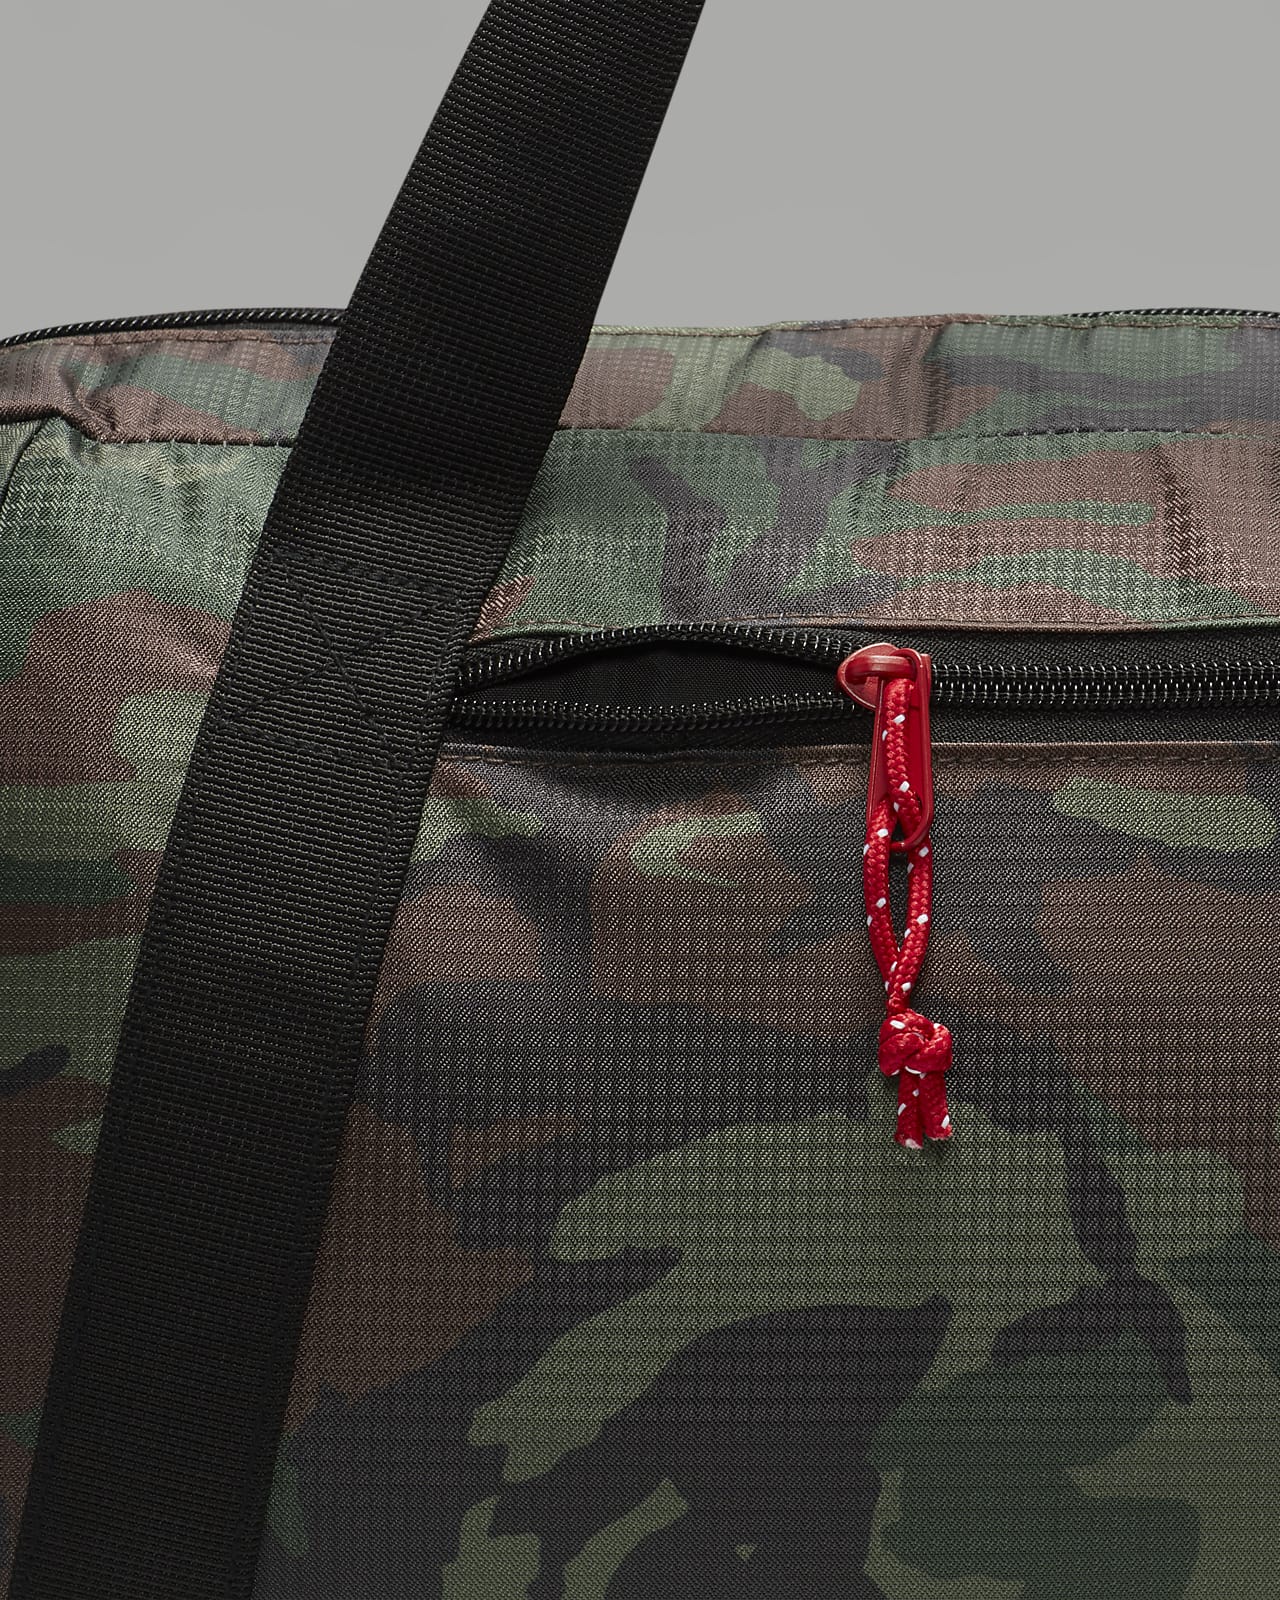 Jordan Essentials Duffle Duffle Bag (15L).